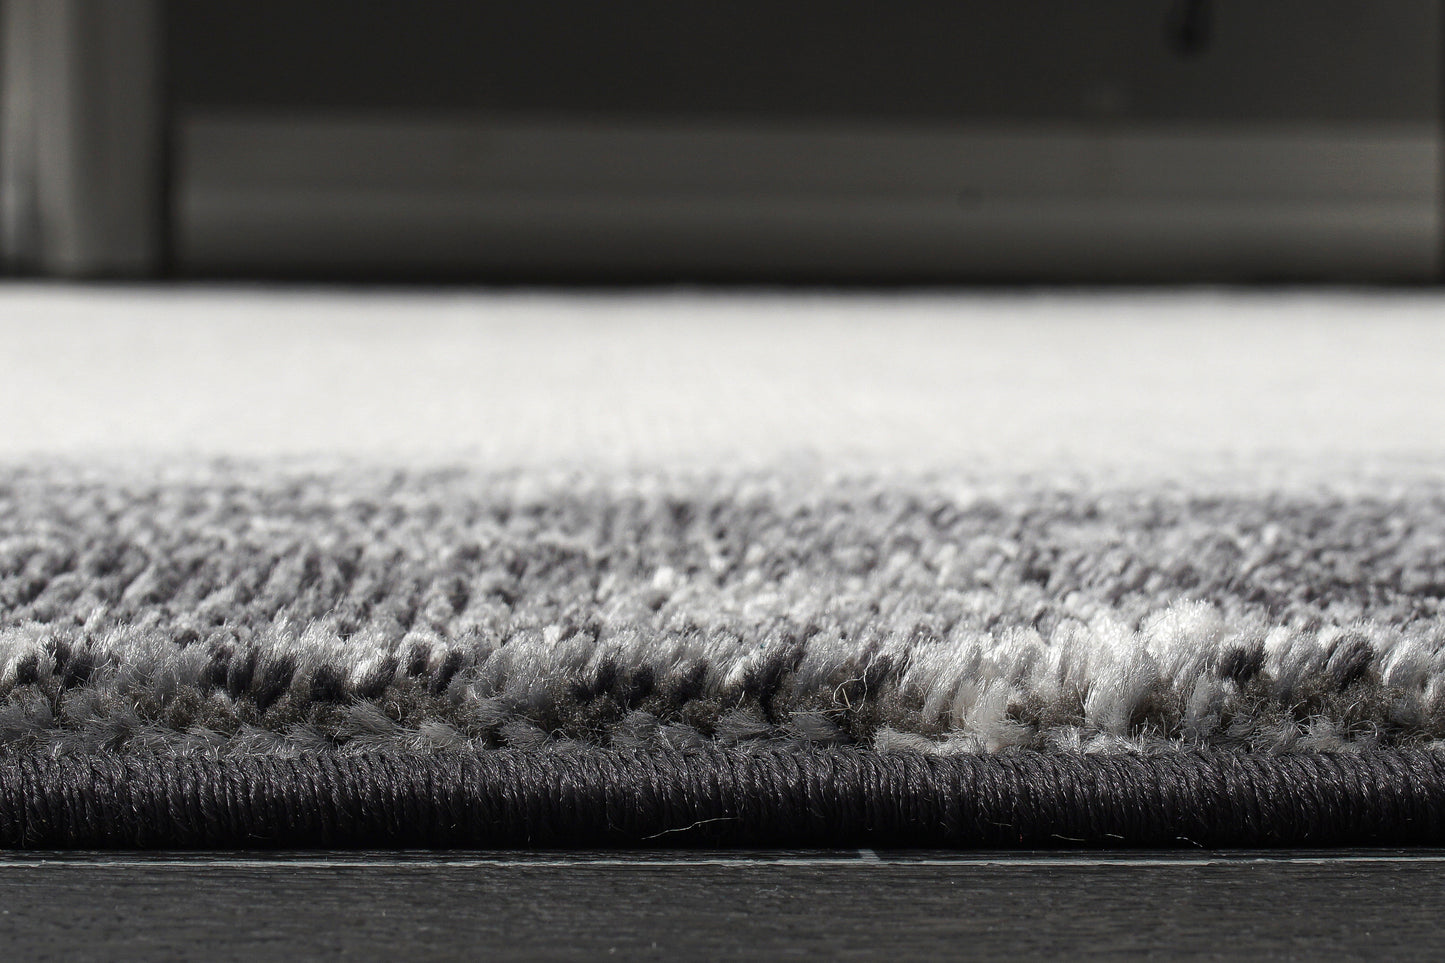 lucas dark light grey modern bordered plain solid color area rug 9x12, 10x13 ft Large Big Carpet, Living Room, Beroom